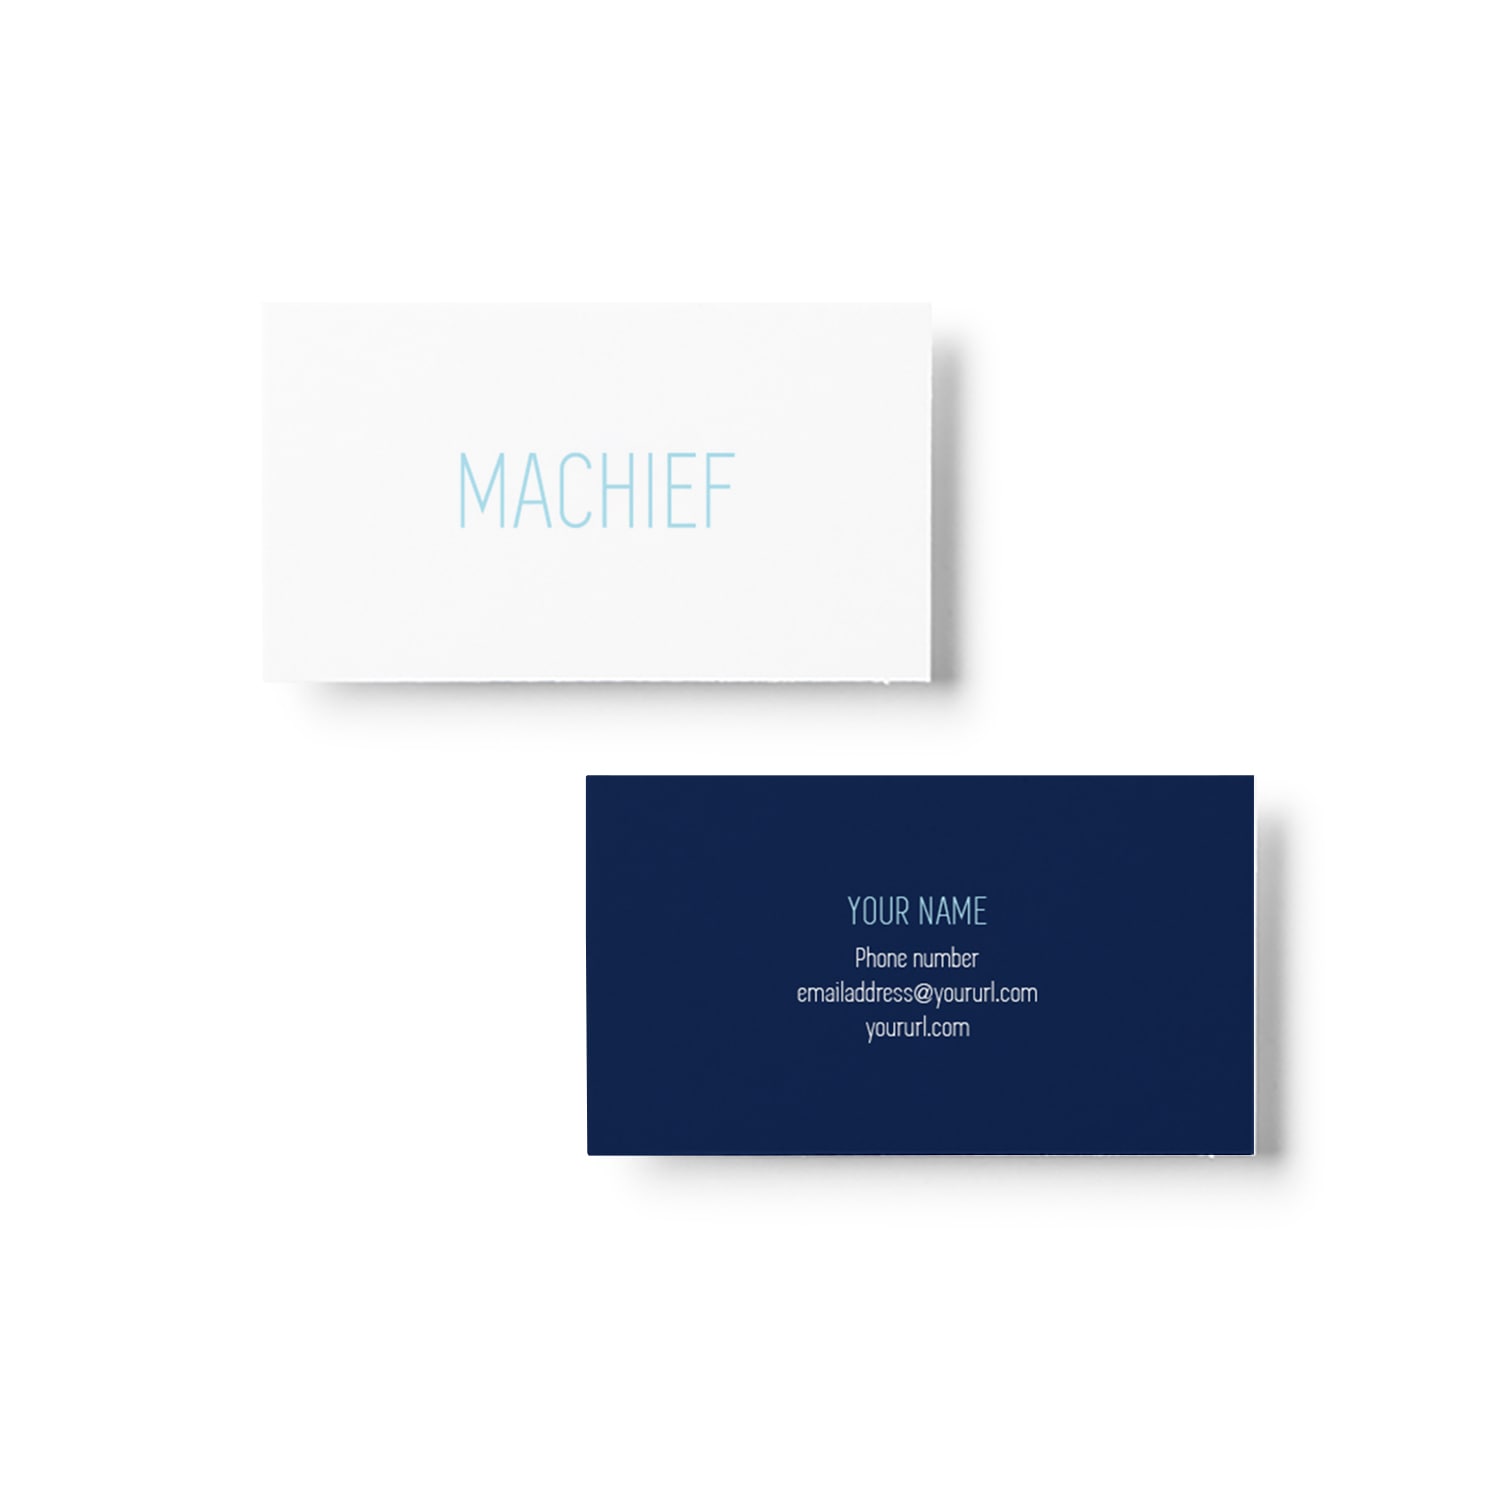 Machief Business Card Design_Copyright Tiny Crowd